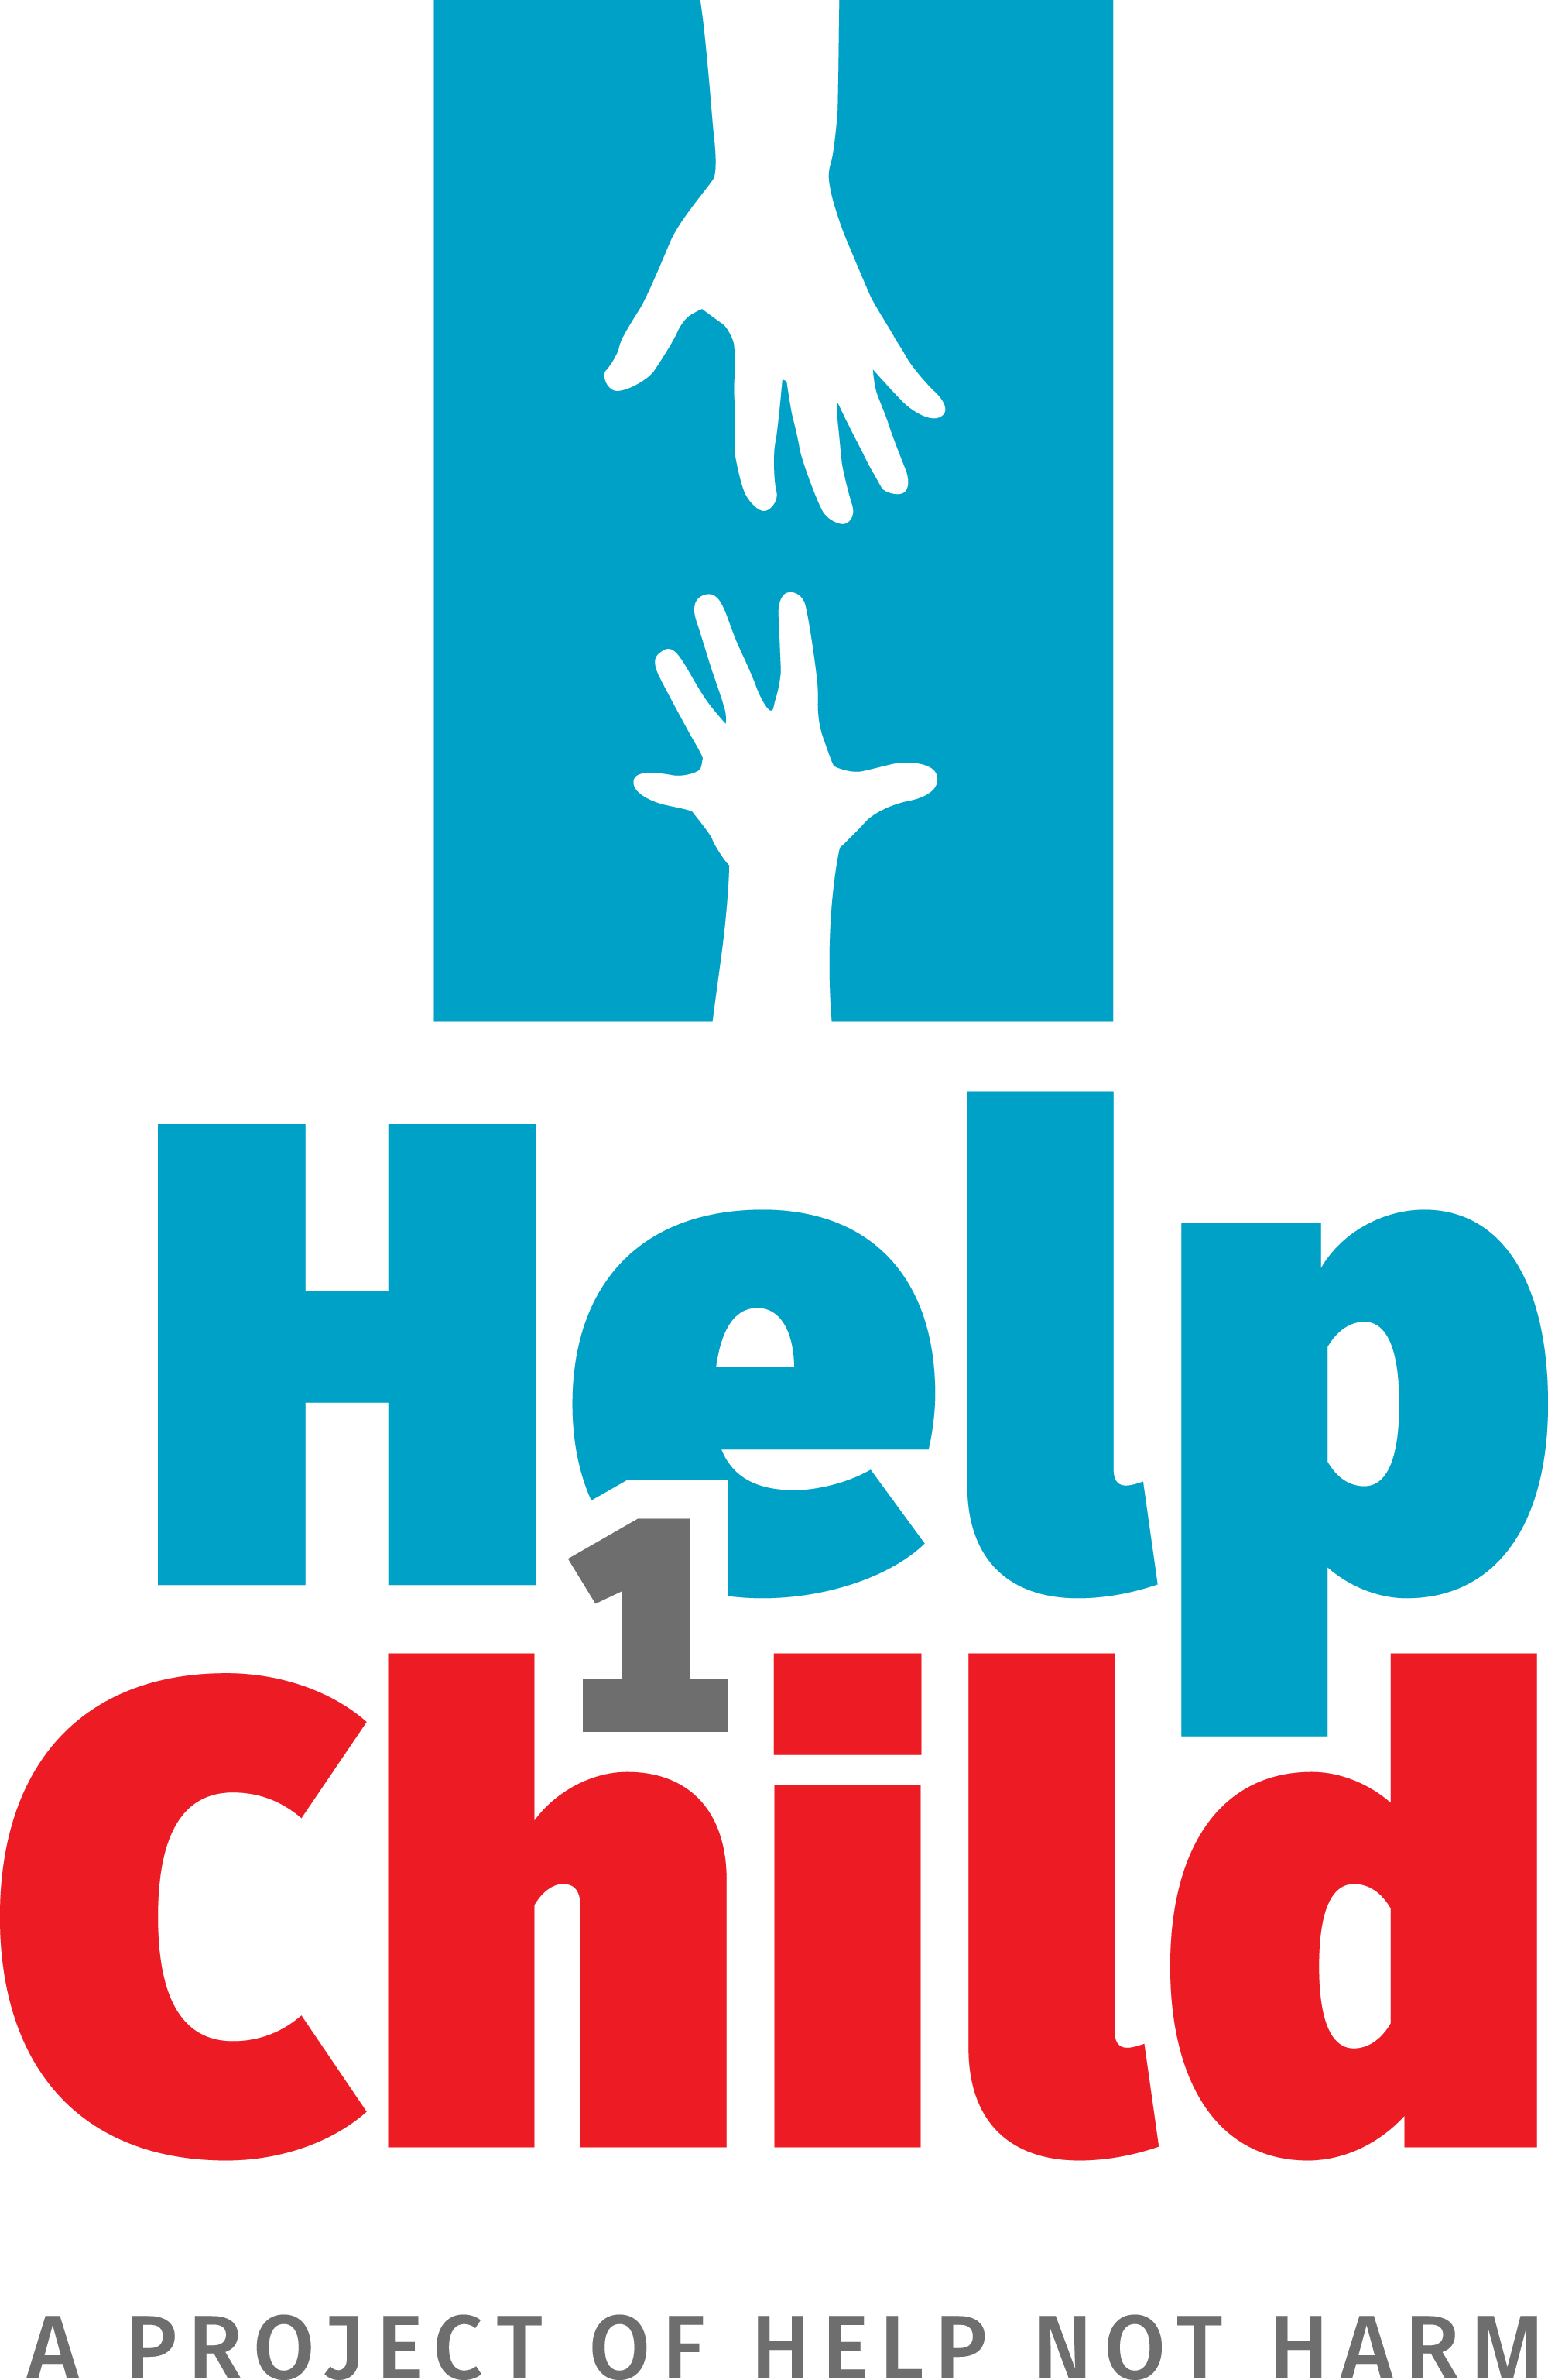 Help 1 Child